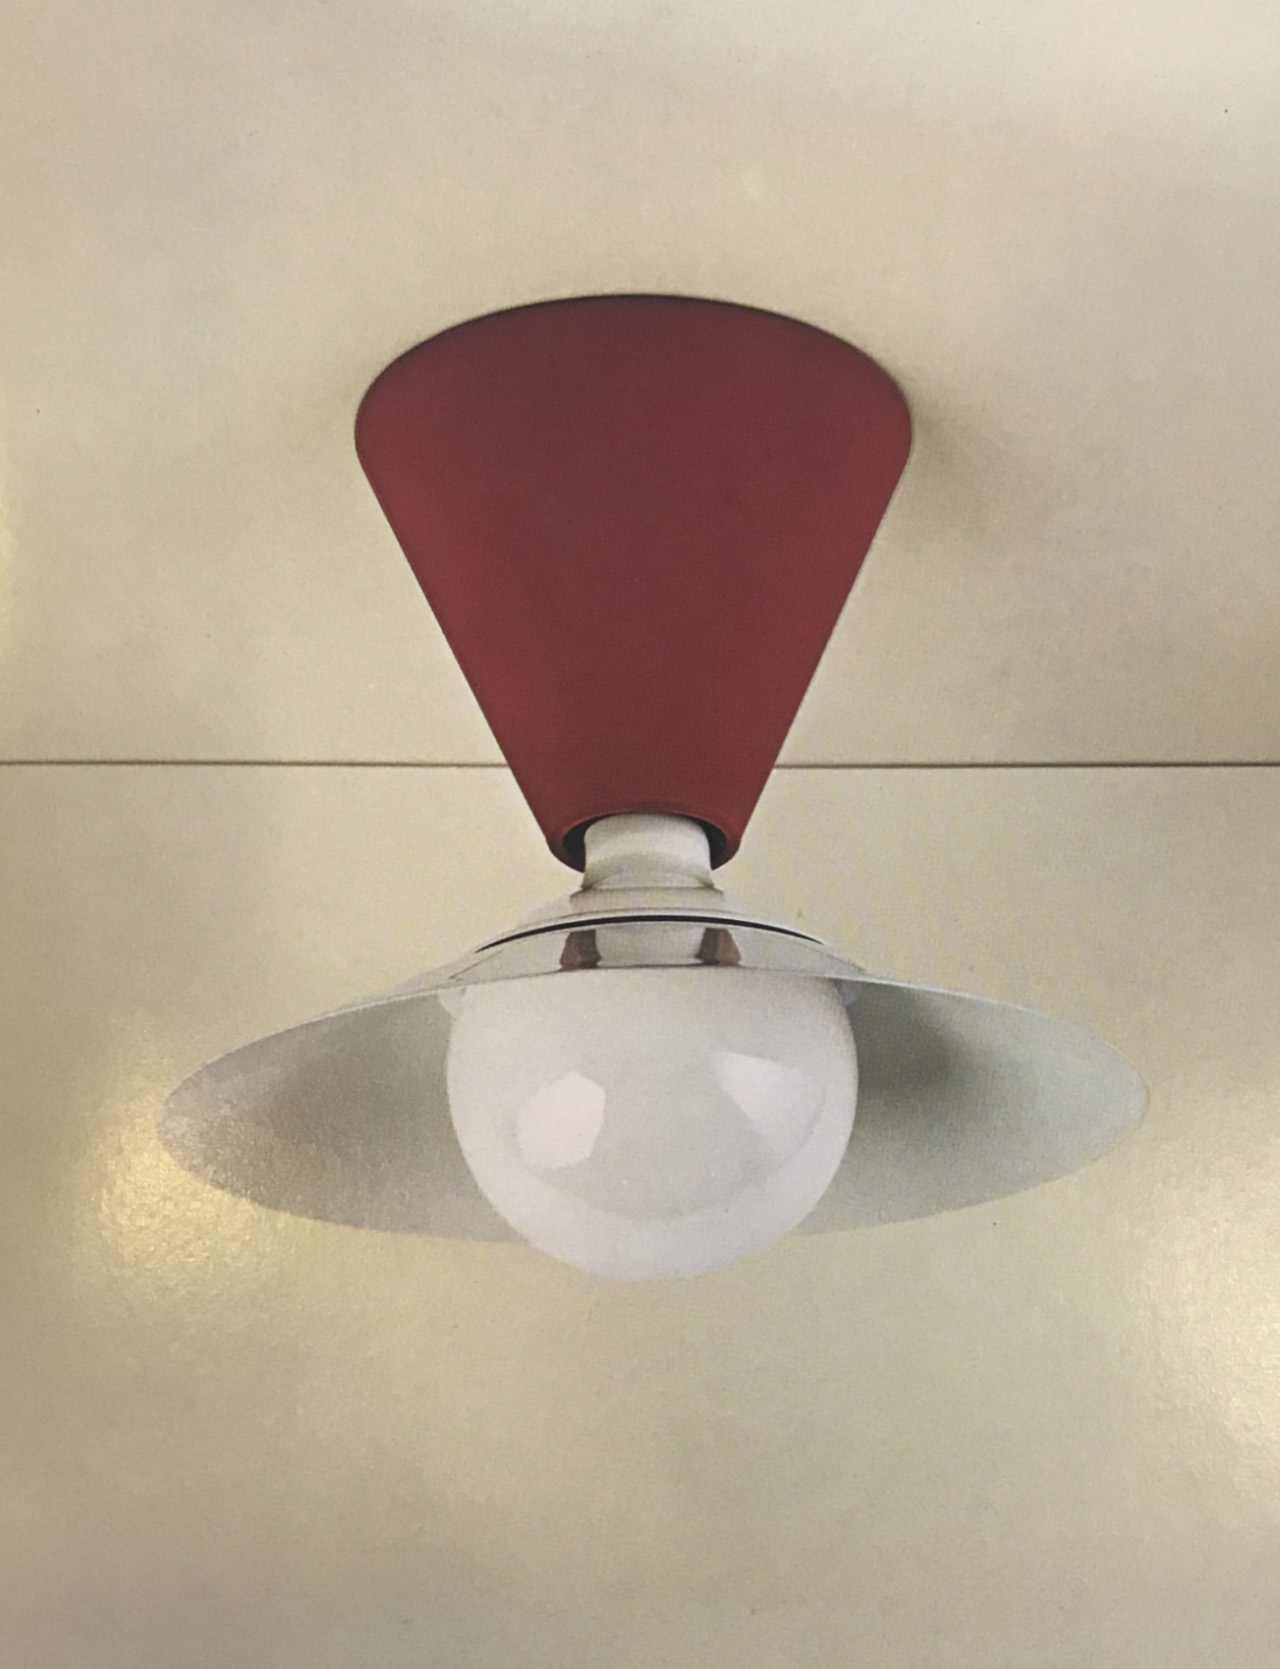 Fante-Lamp for Ceiling